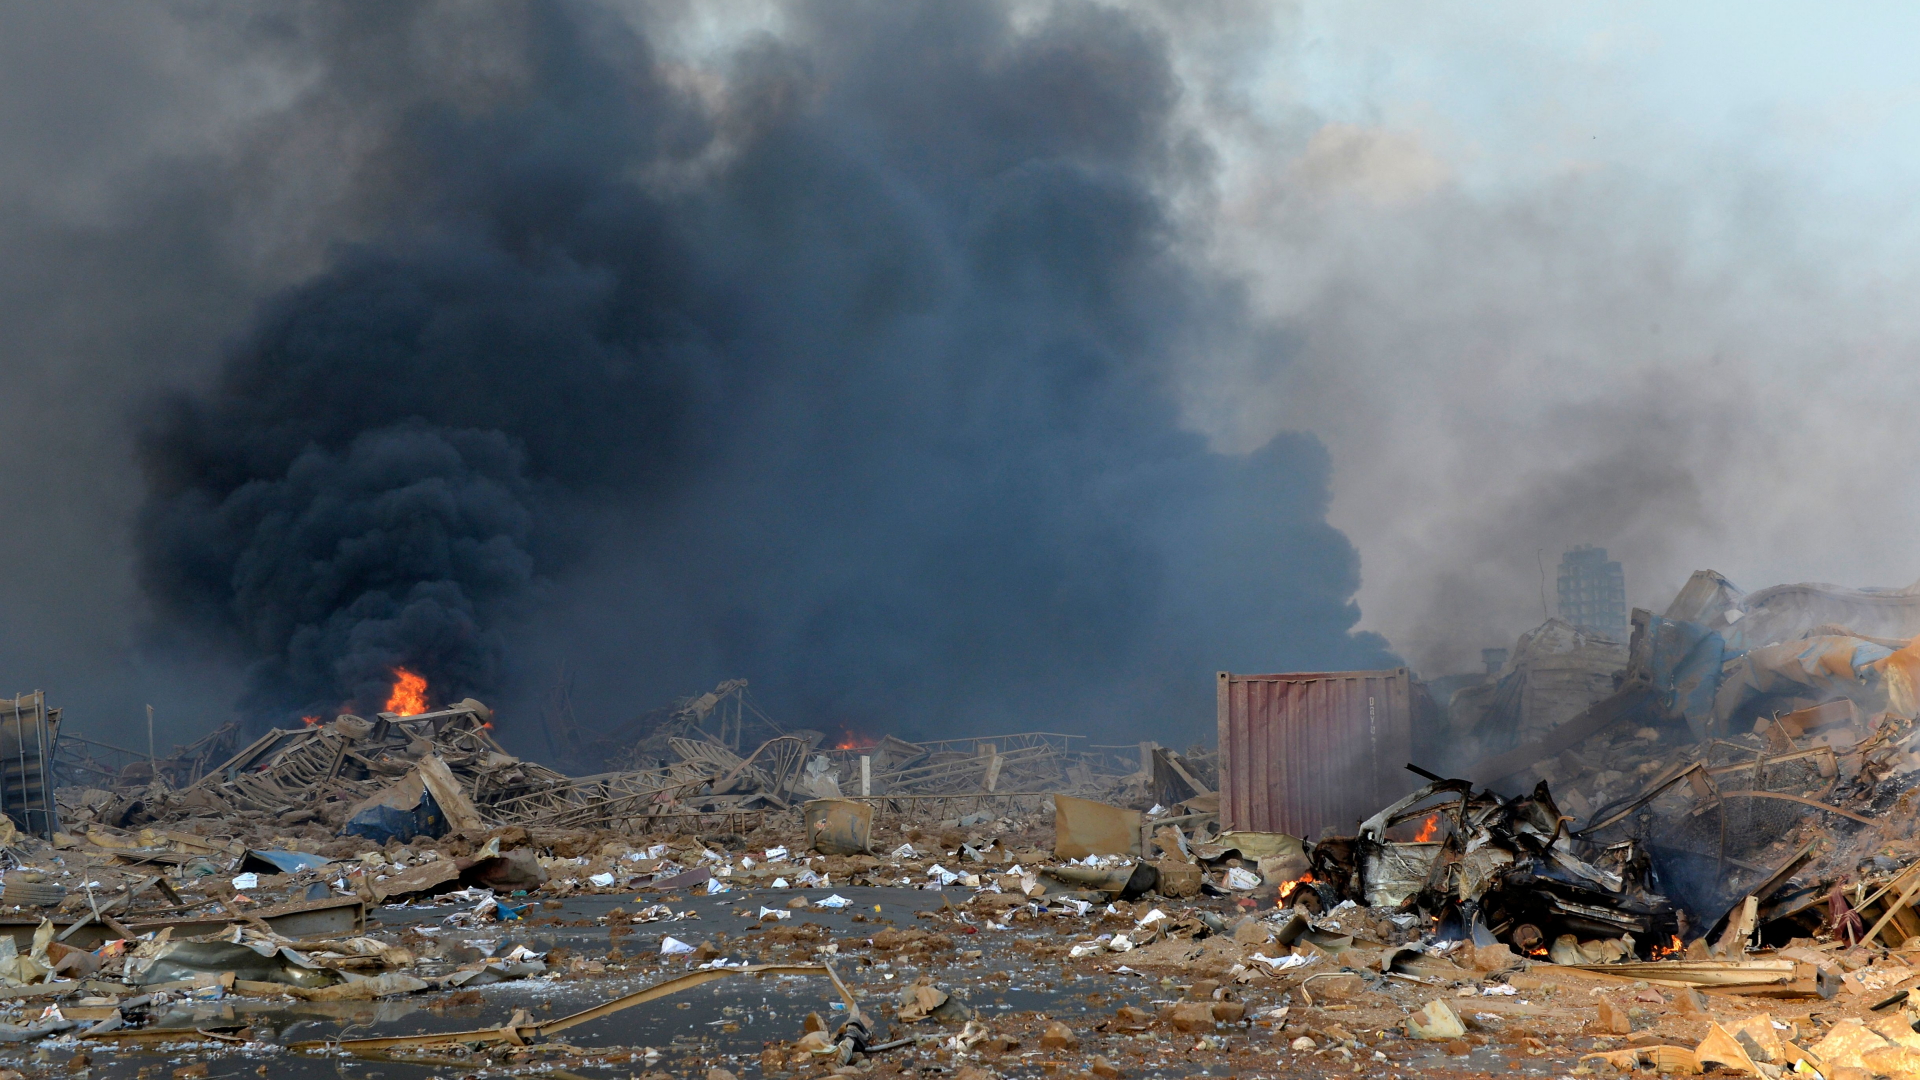 Der Hafen von Beirut ist nach dem Unglück komplett verwüstet. | WAEL HAMZEH/EPA-EFE/Shutterstock